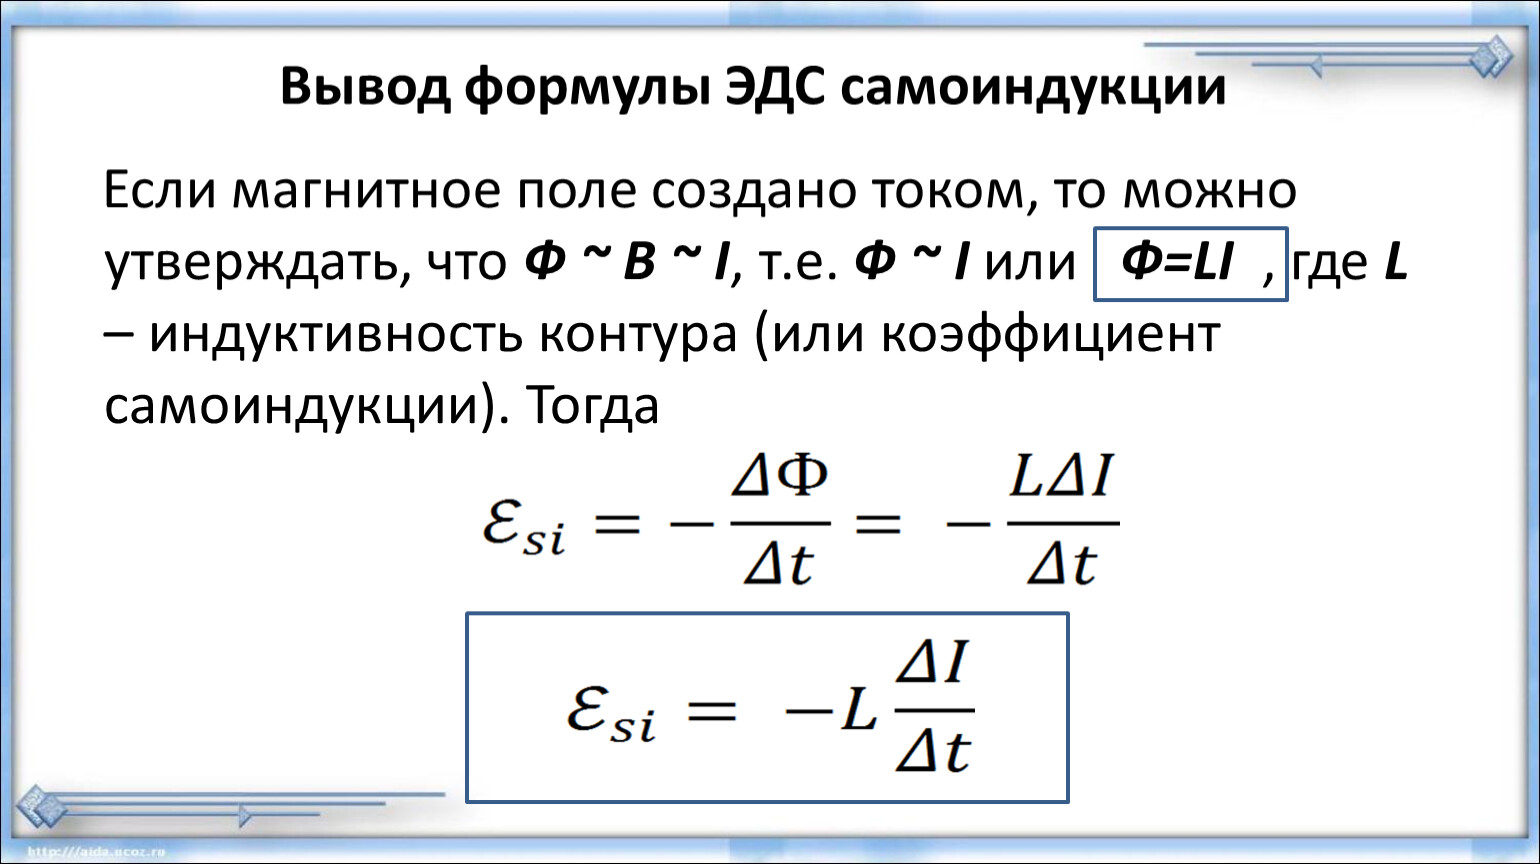 Явление самоиндукции формула. ЭДС самоиндукции формула. ЭДС самоиндукции формула через Индуктивность. Формула для расчета ЭДС самоиндукции. Формула ЭДС самоиндукции в катушке.